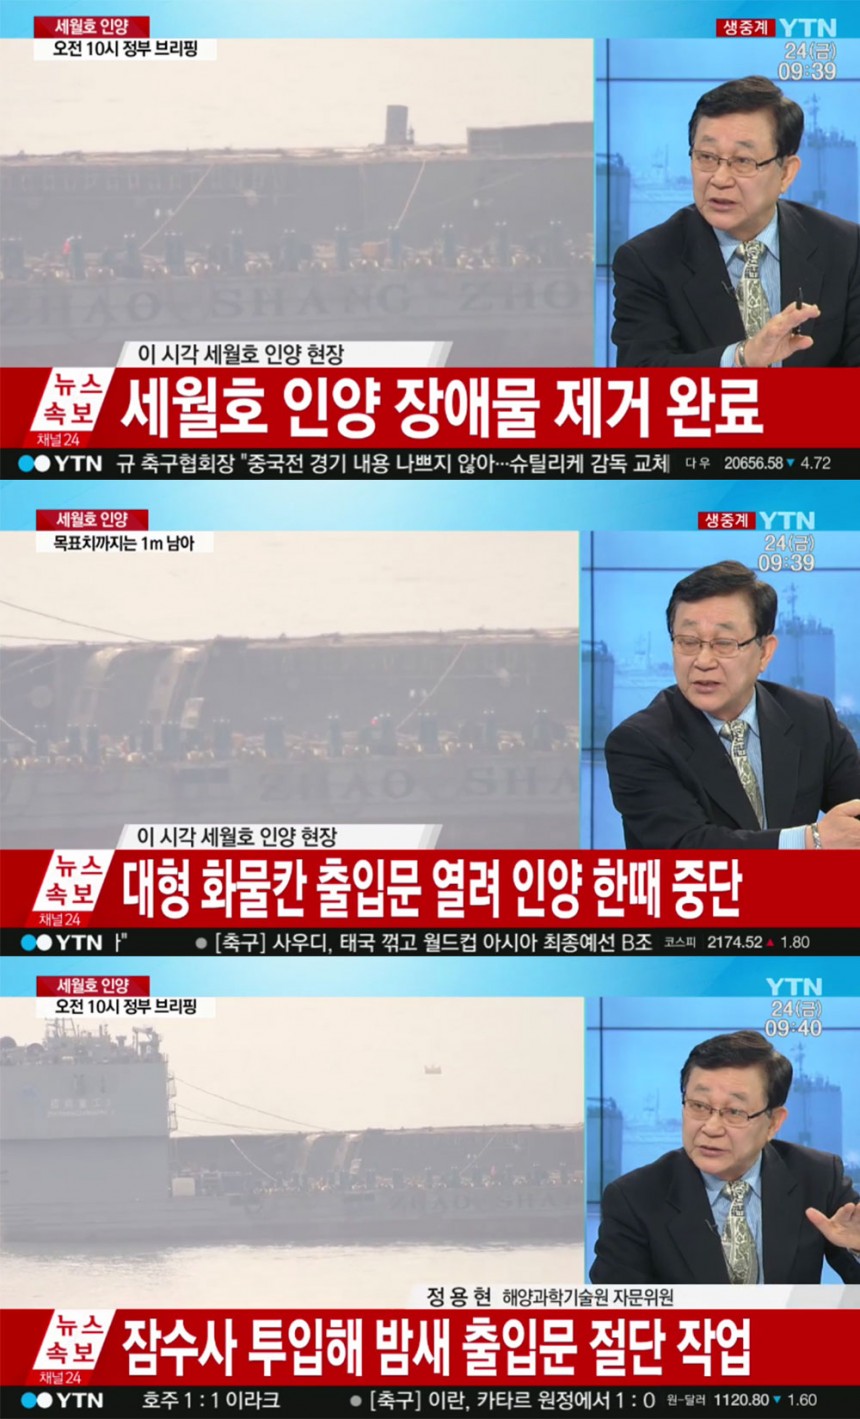 ‘뉴스속보’ 방송 화면 / YTN ‘뉴스속보’ 방송 캡처